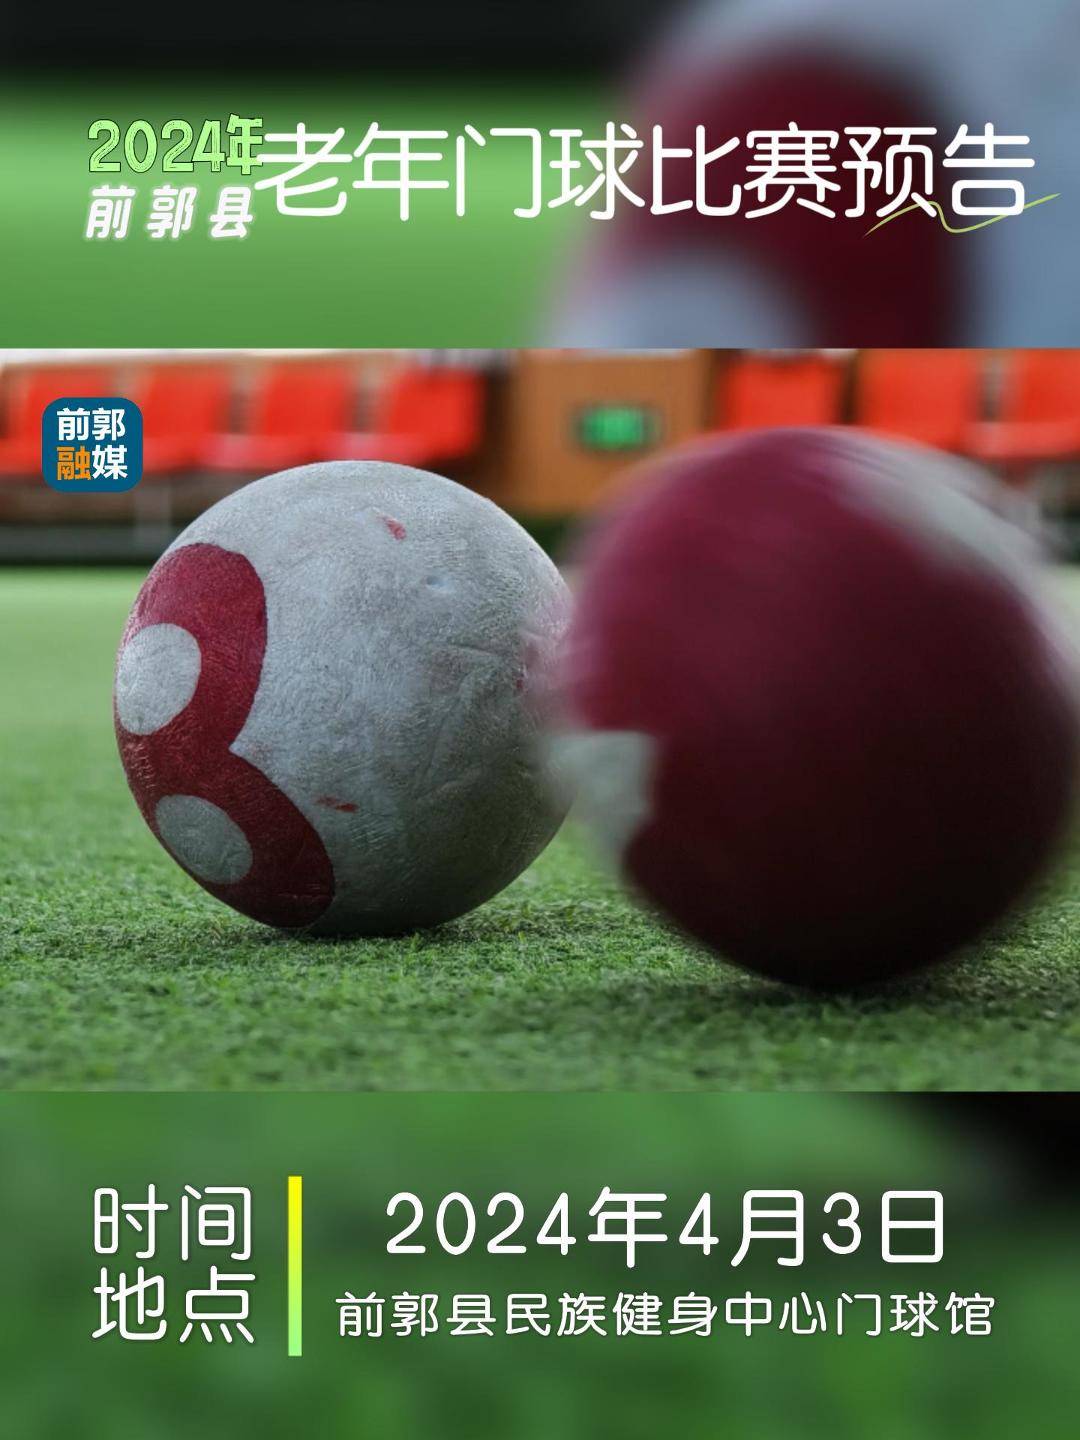 2024年前郭县老年门球比赛预告